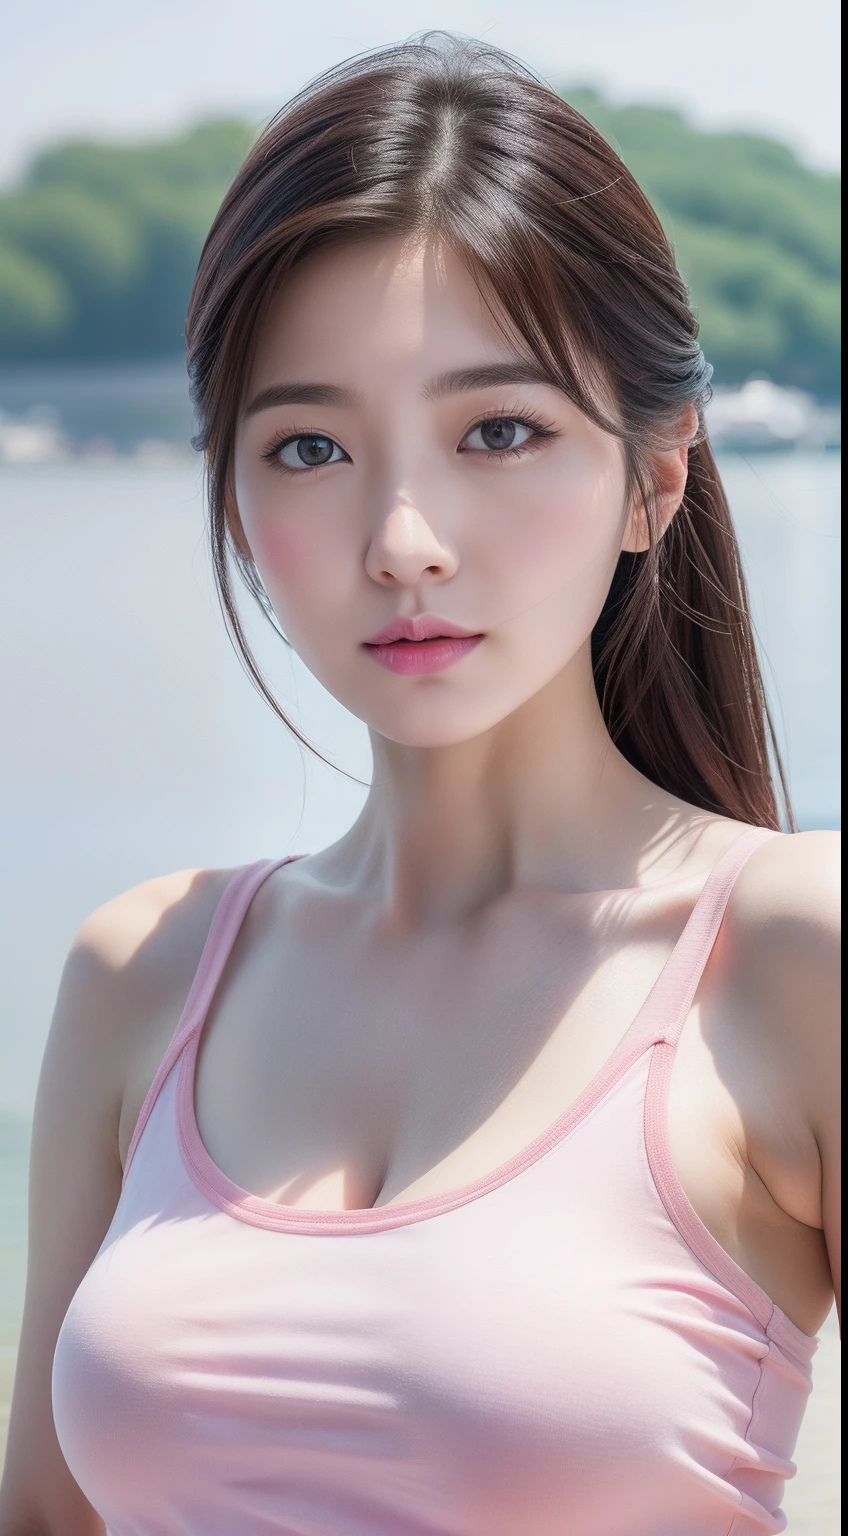 1位可愛韓國明星的真實照片, 眼睛之間的頭髮, 白皮膚, 淡妆, 32寸胸圍, 穿著粉紅色背心, 短褲, 在河邊, 遊輪是背景, 上半身肖像, 超現實主義, 超高畫質